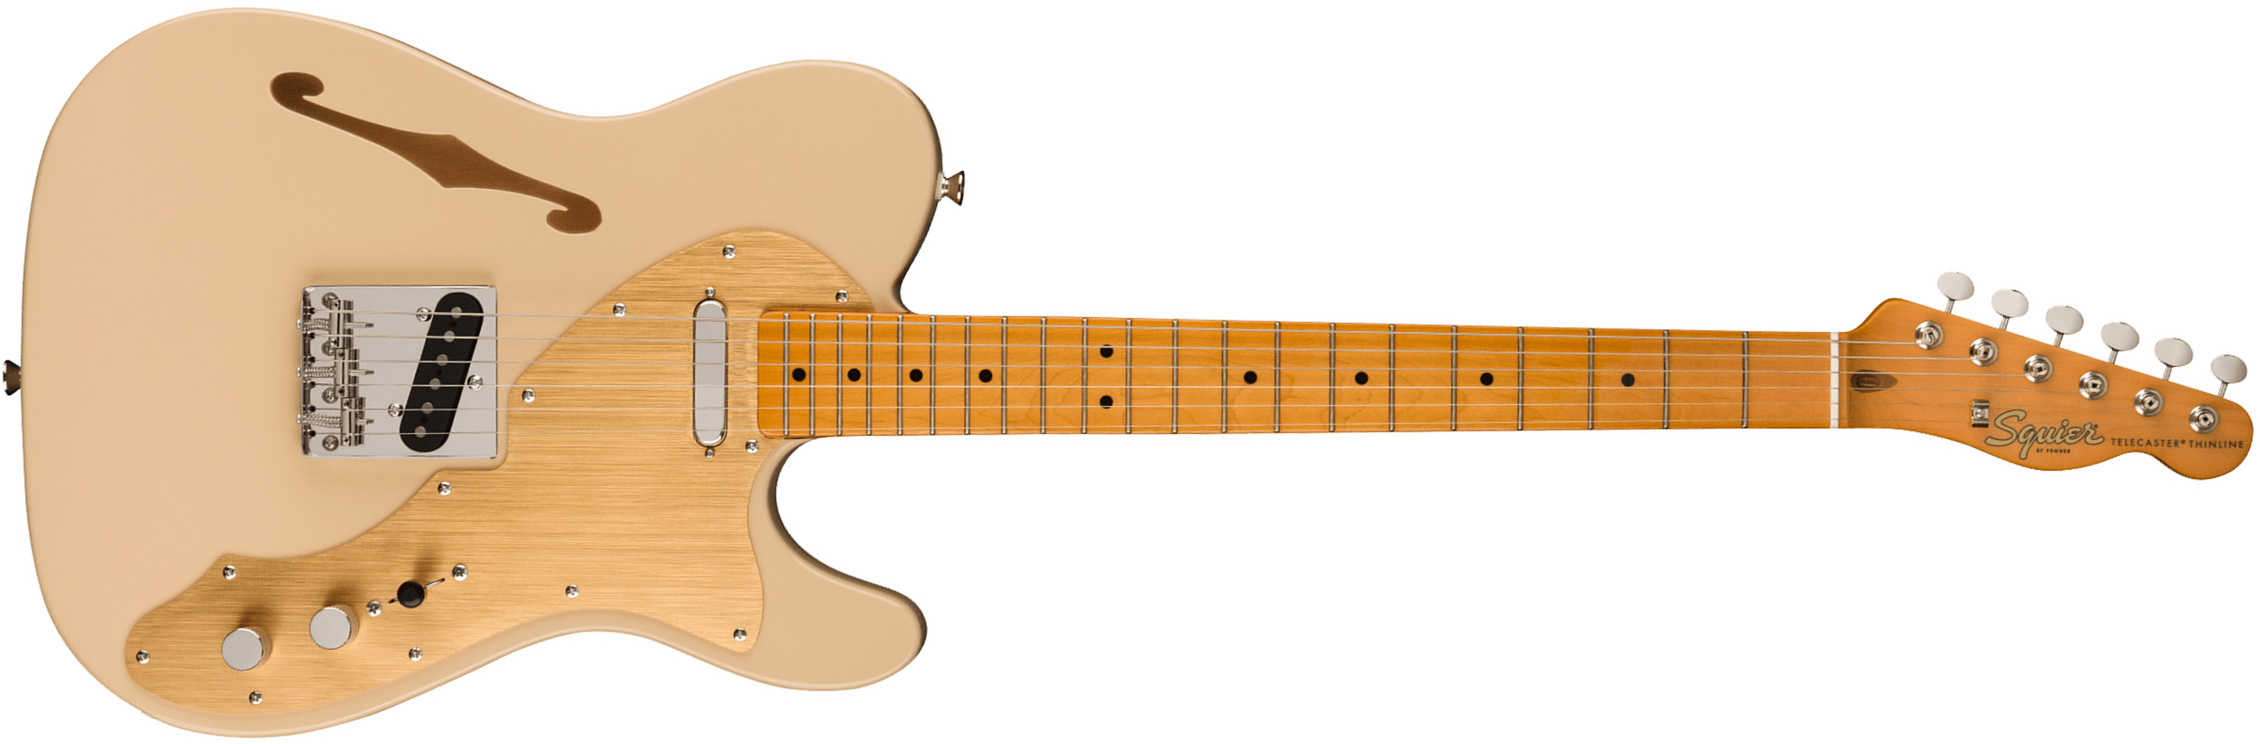 Squier Tele '60s Thinline Gold Anodized Pickguard Classic Vibe Fsr 2s Ht Mn - Desert Sand - Guitarra eléctrica con forma de tel - Main picture